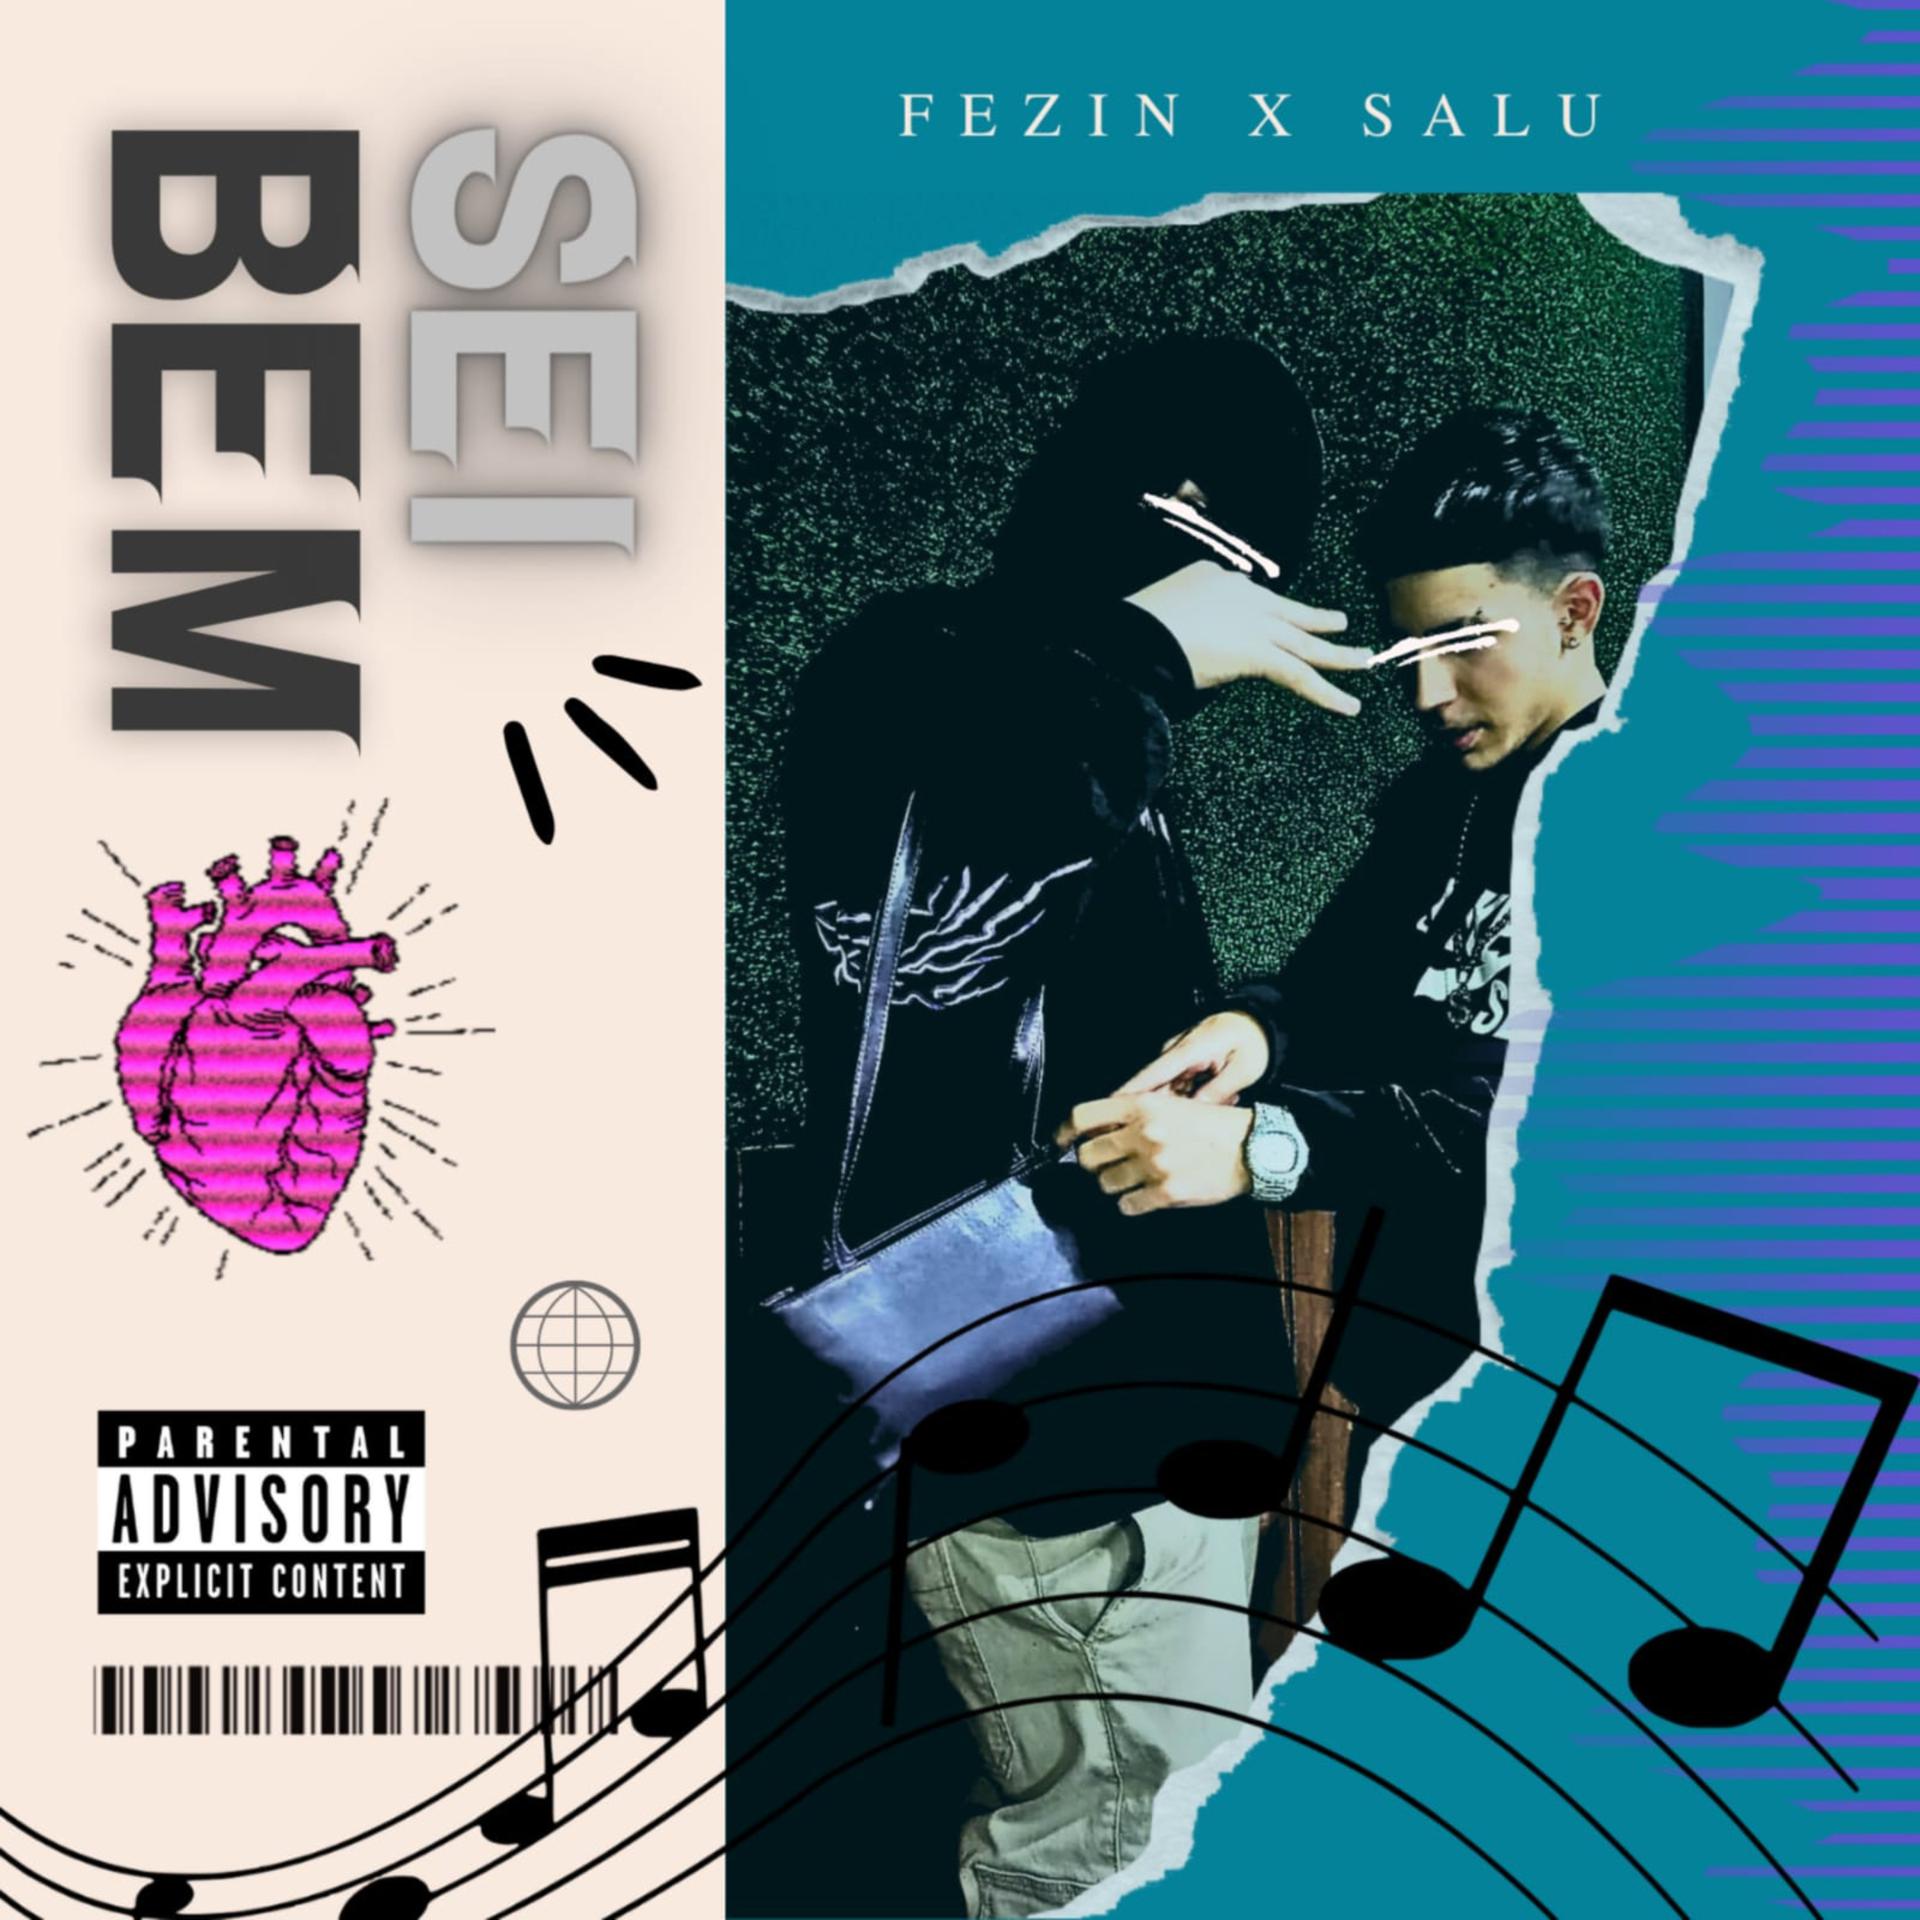 Постер альбома Sei Bem